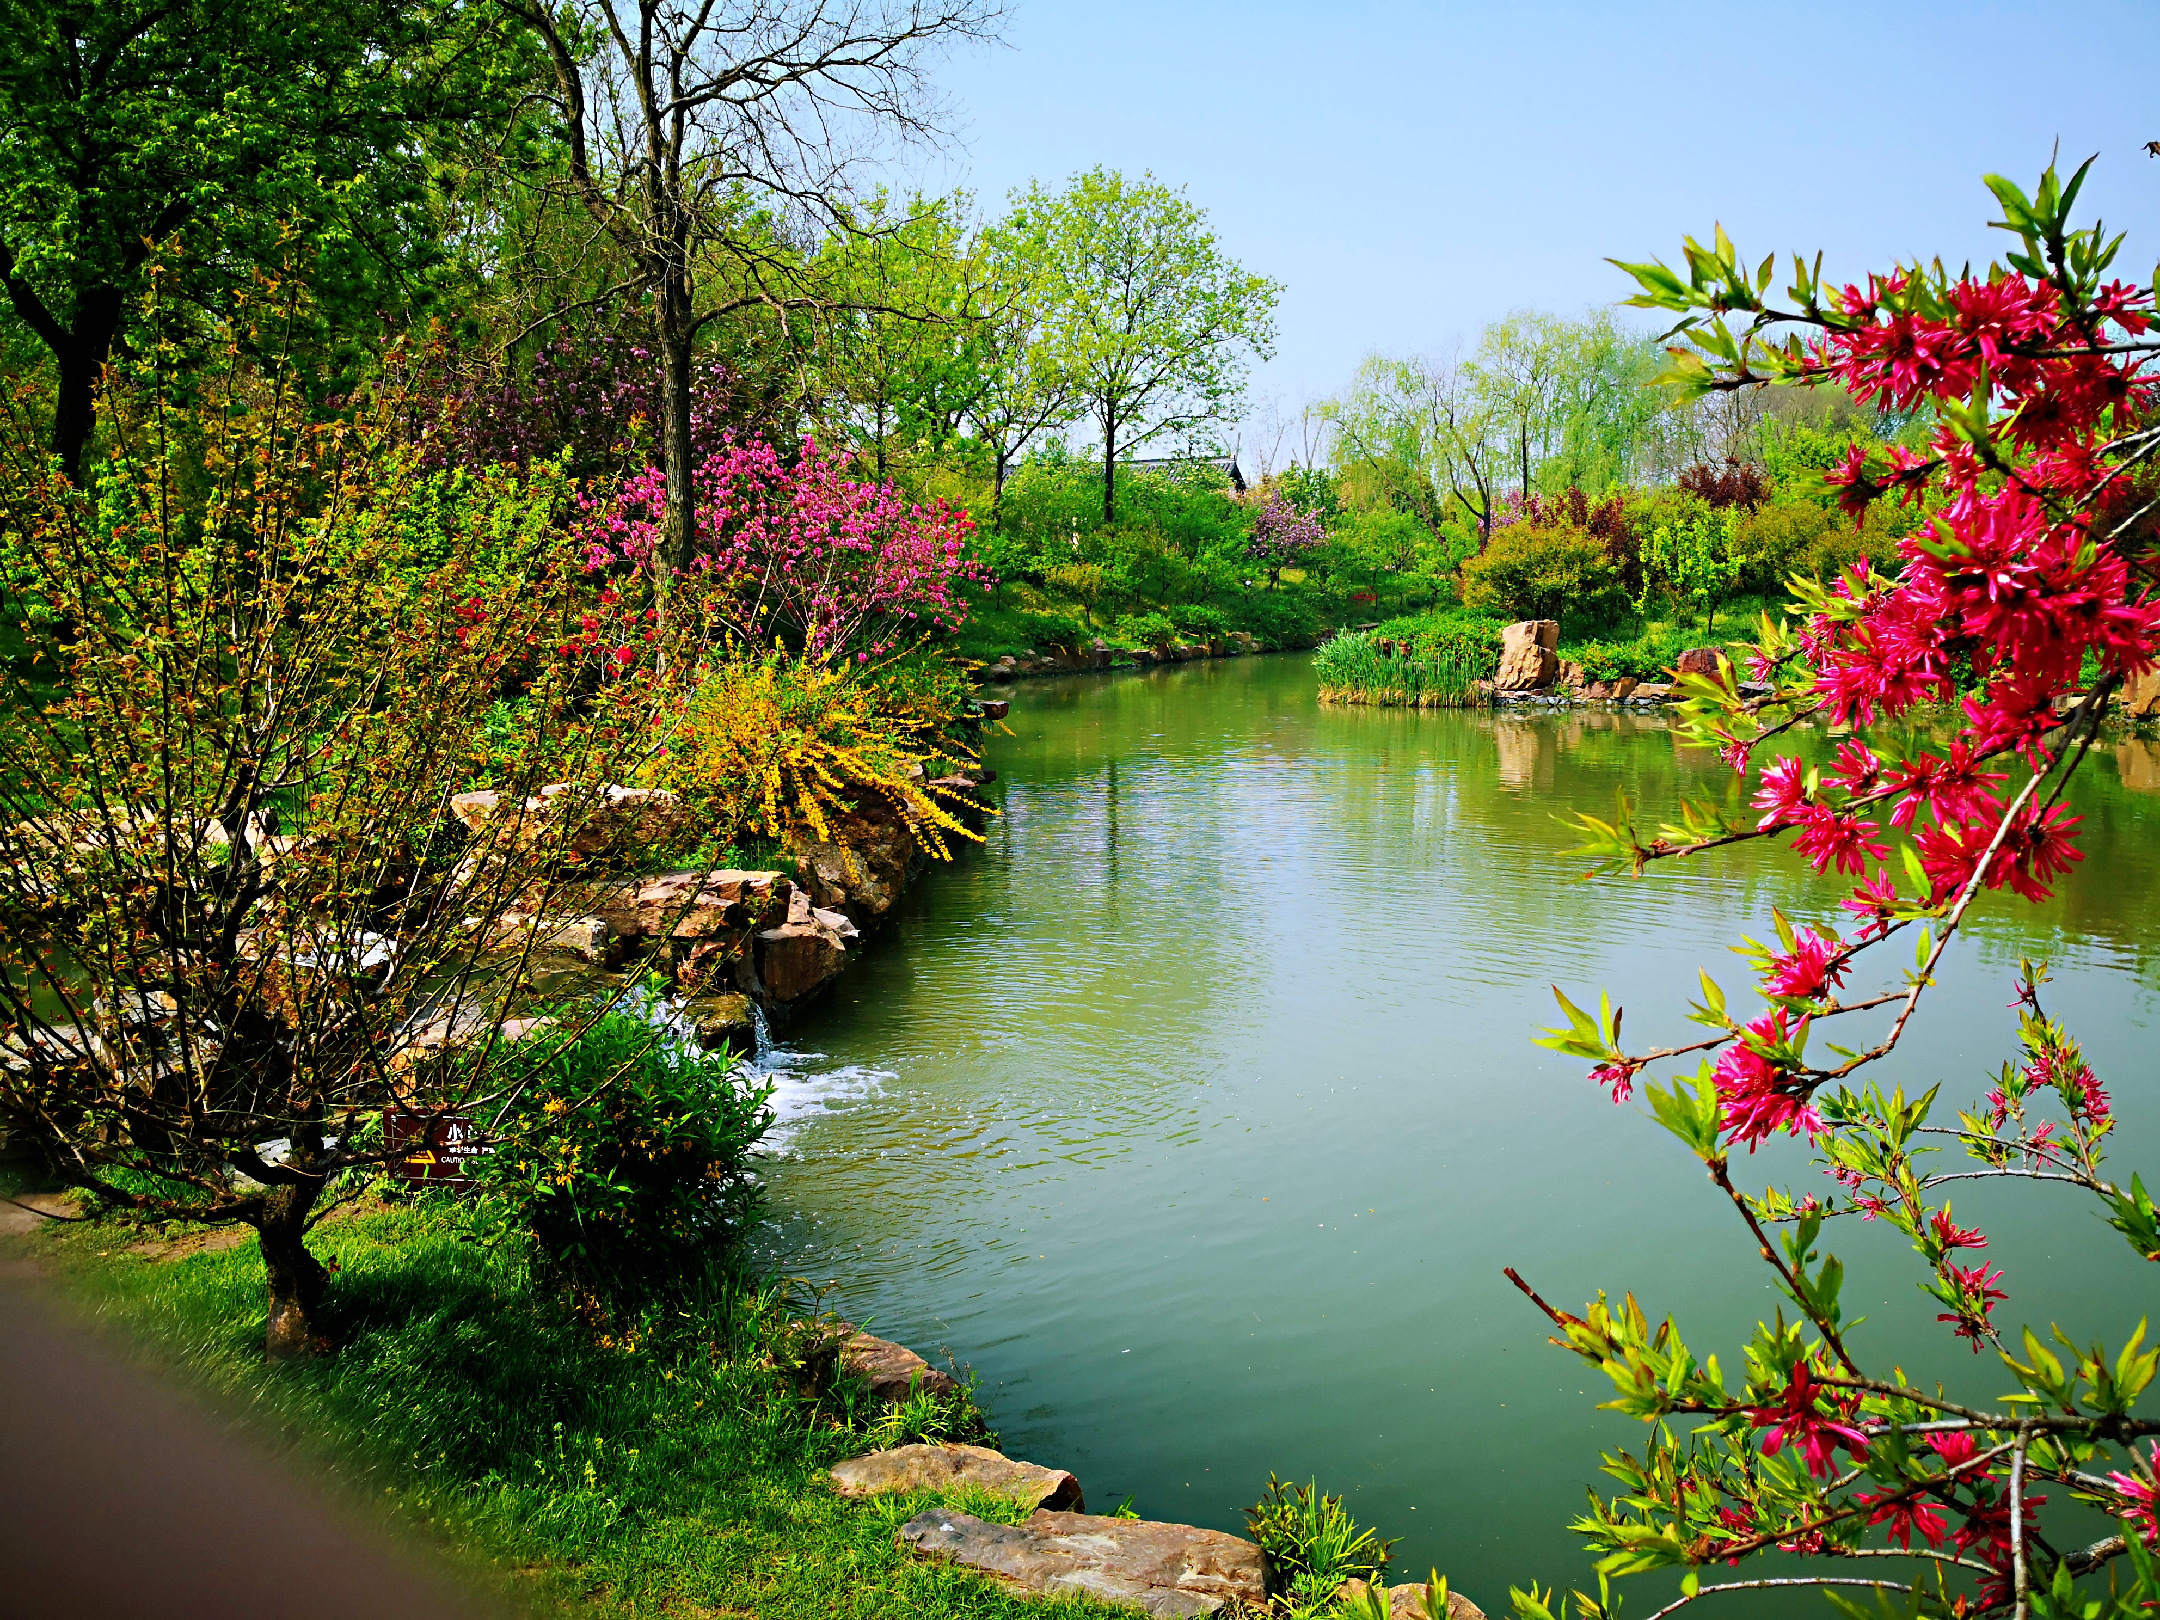 高清大图,直击烟花三月最美的扬州图为瘦西湖风景区里盛开的牡丹花